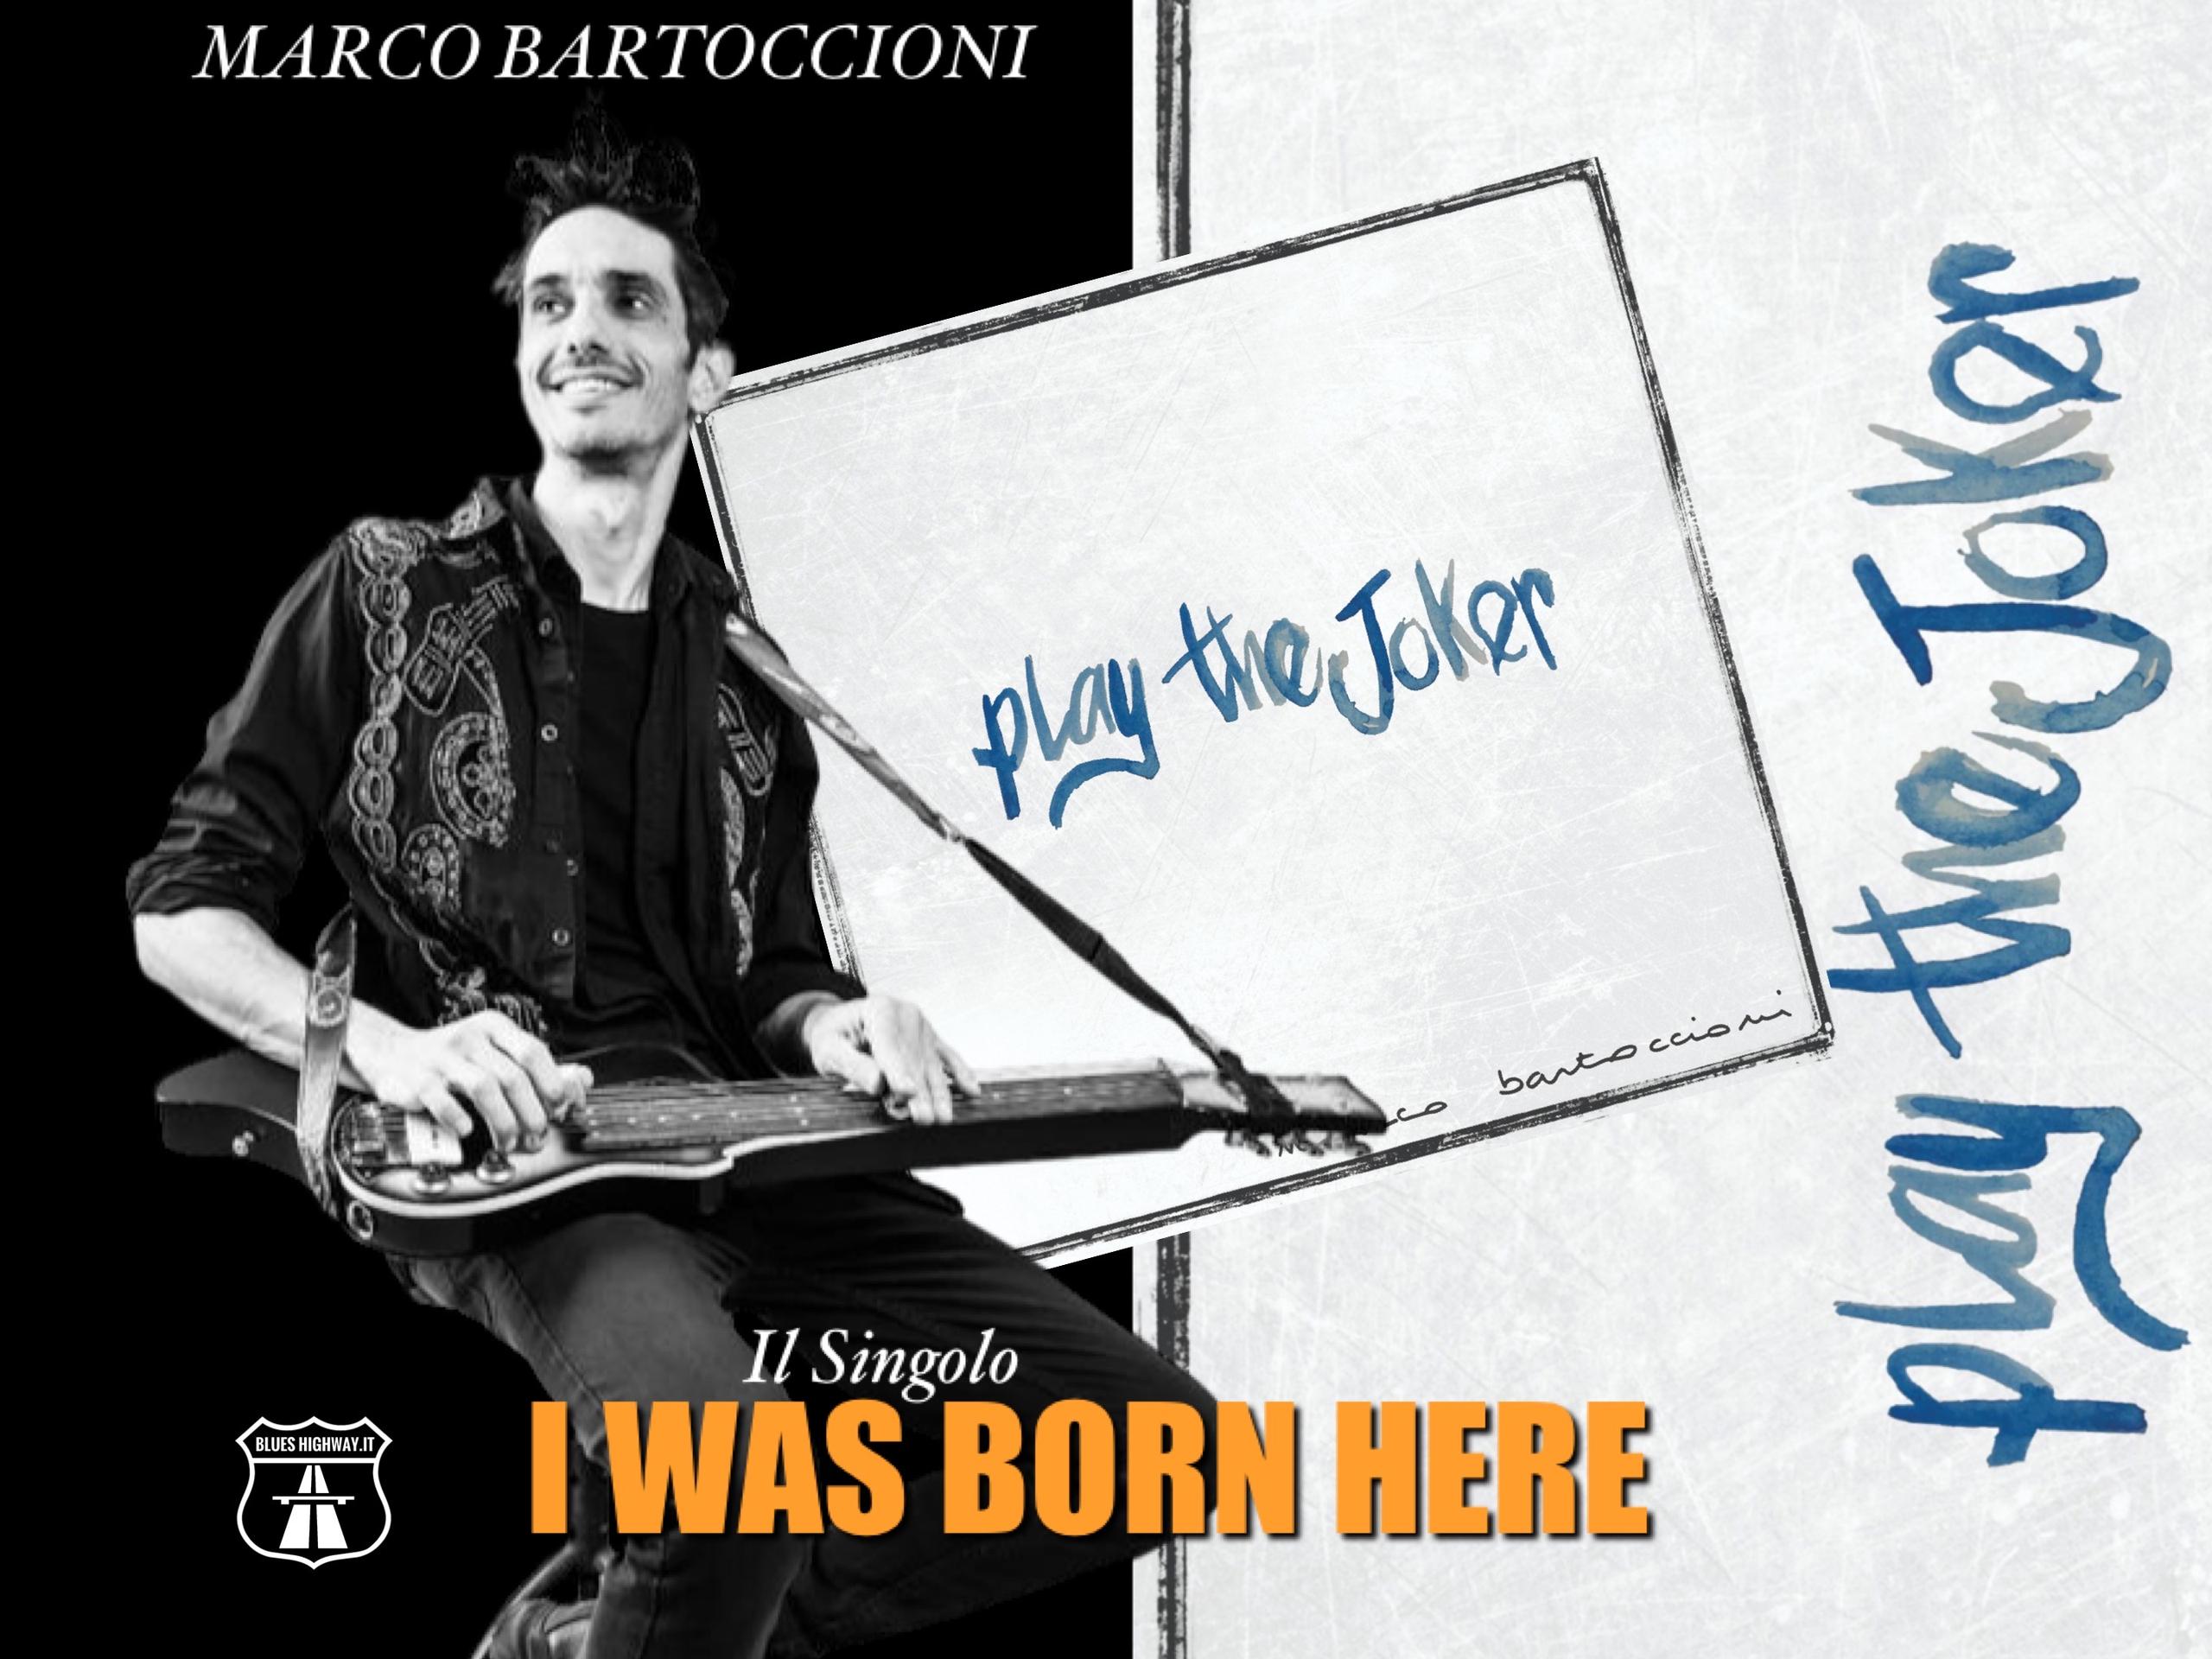 MARCO BARTOCCIONI - Il singolo “I WAS BORN HERE”